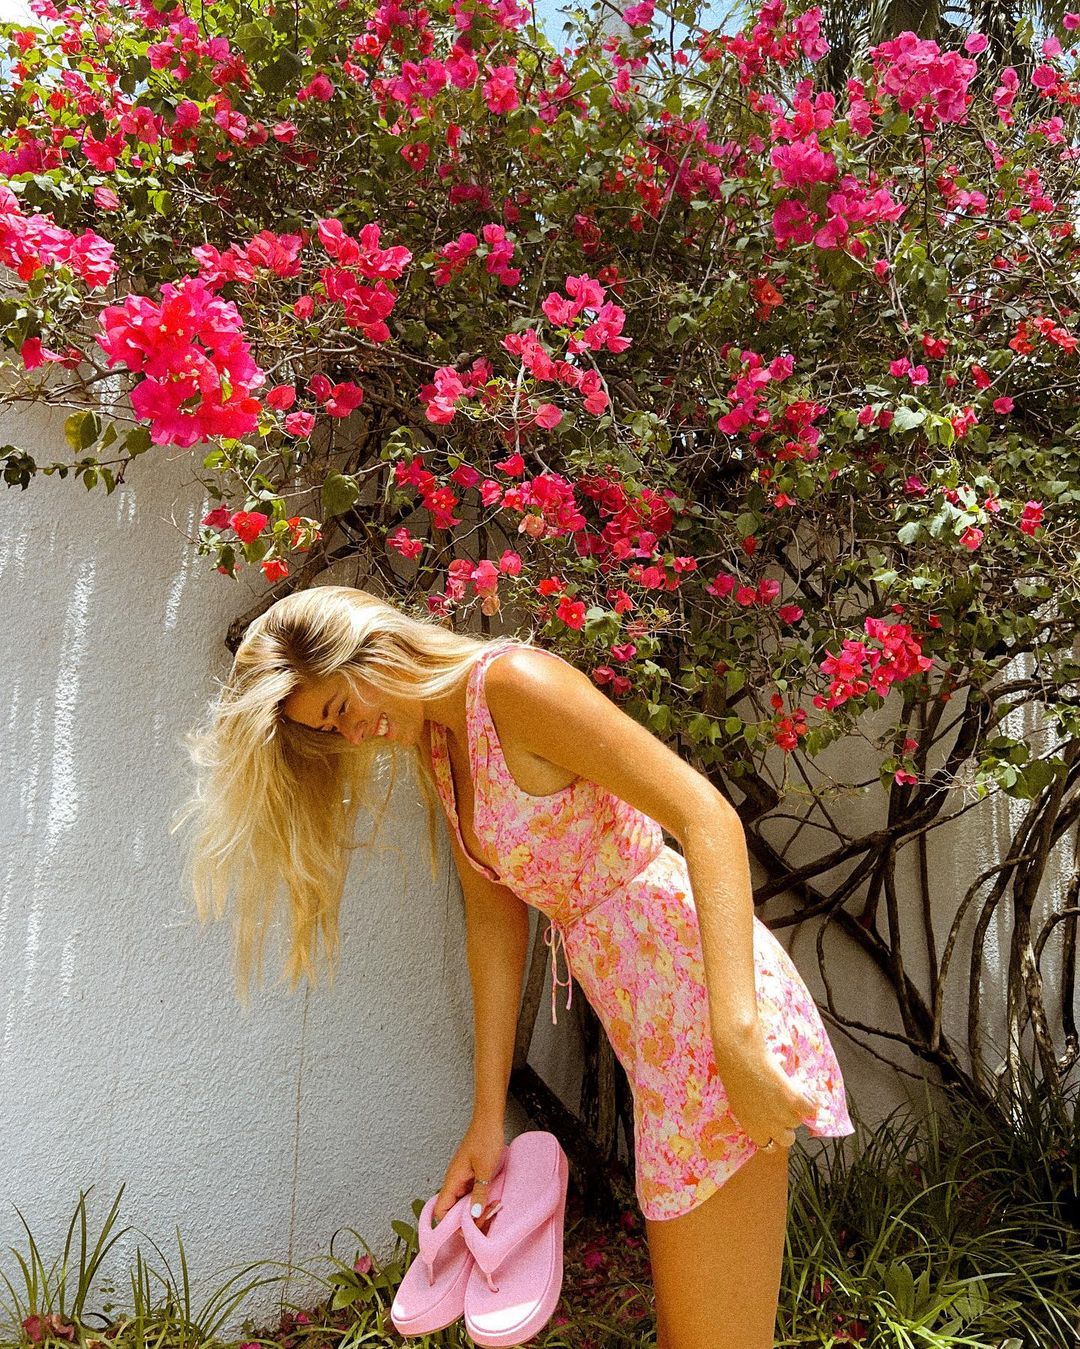 La influencer Taylor Bond con un look veraniego al lado de un árbol lleno de flores primaverales